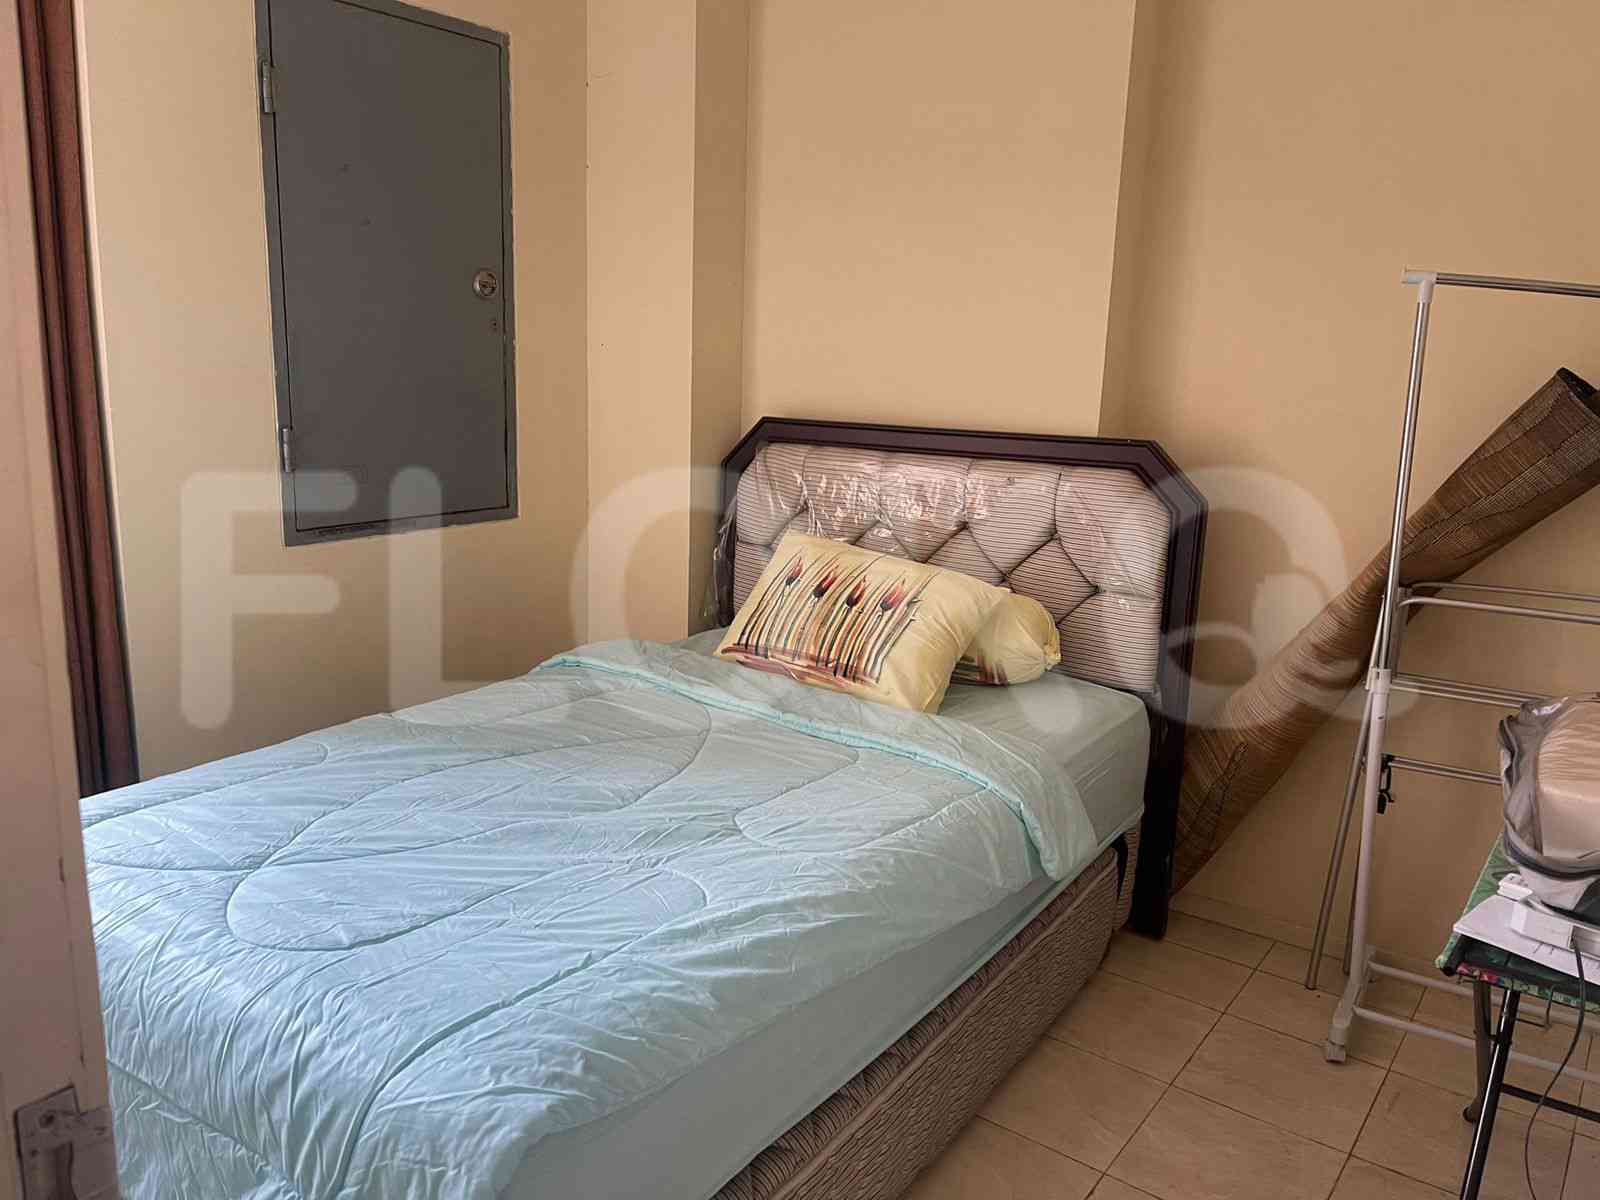 2 Bedroom on 21st Floor for Rent in FX Residence - fsu288 1